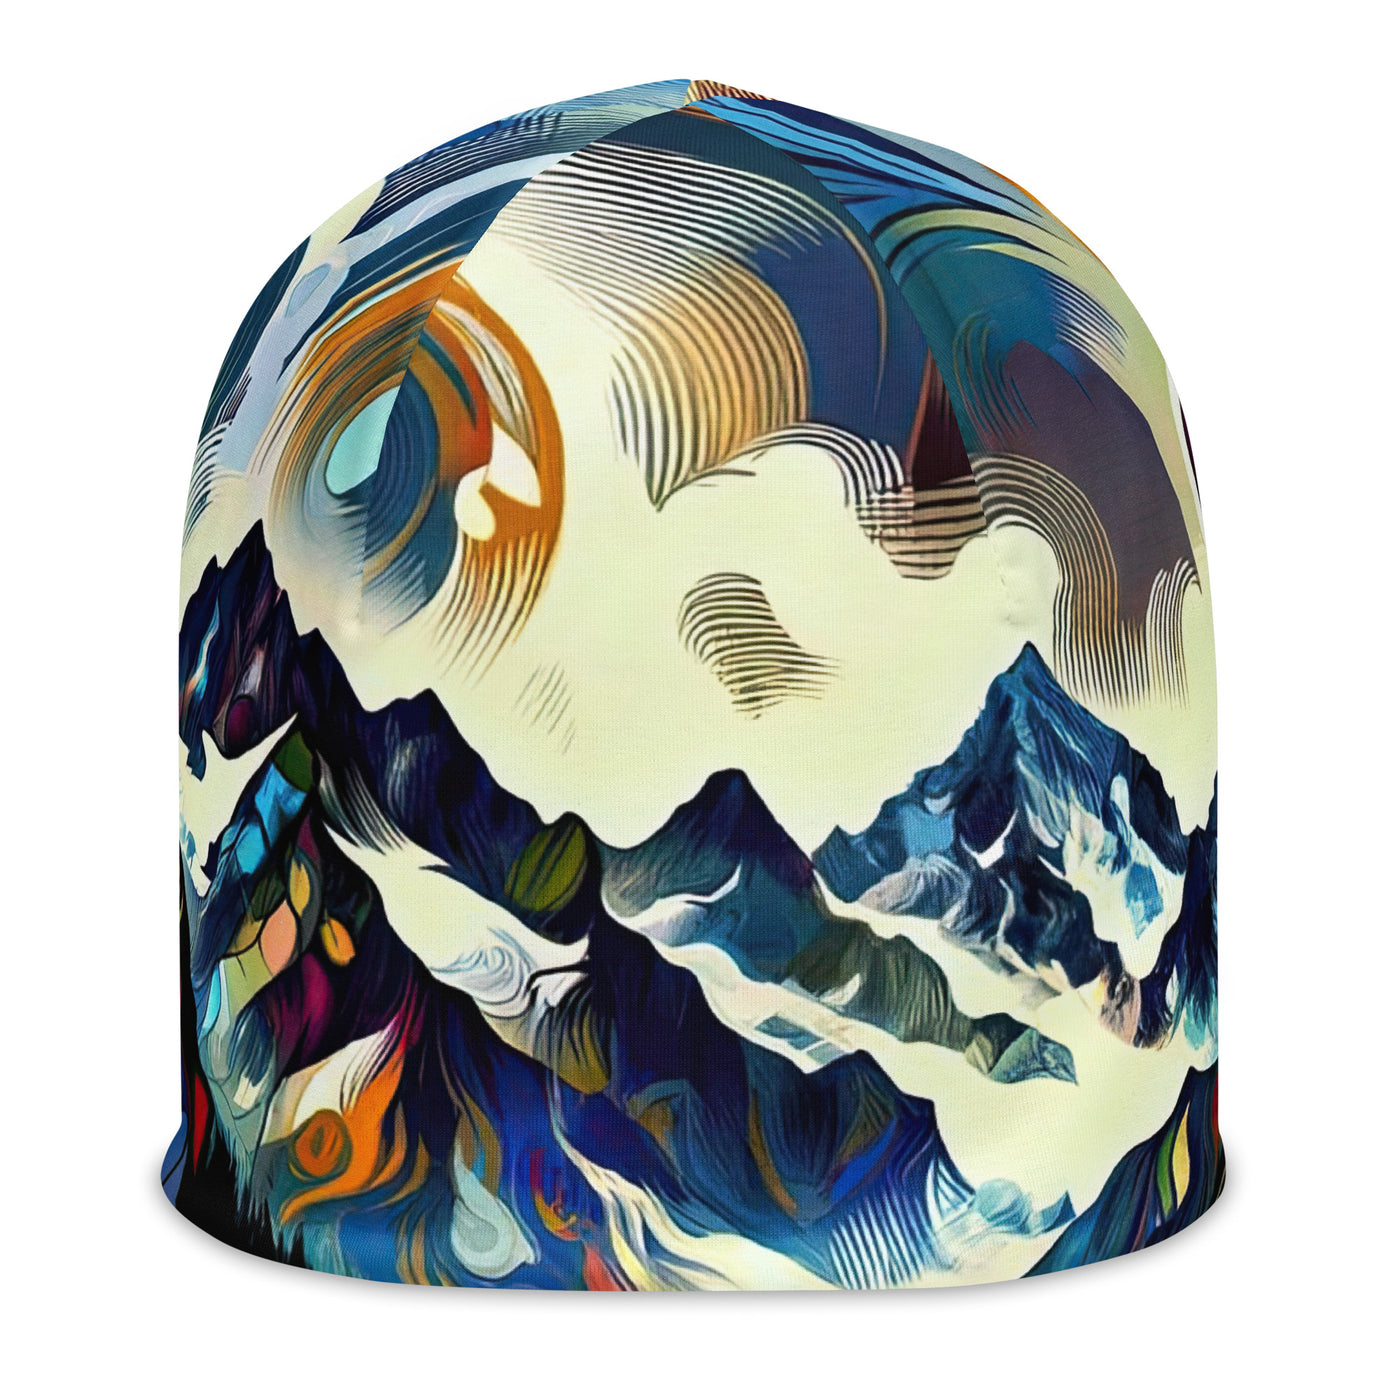 Alpensee im Zentrum eines abstrakt-expressionistischen Alpen-Kunstwerks - Beanie (All-Over Print) berge xxx yyy zzz L